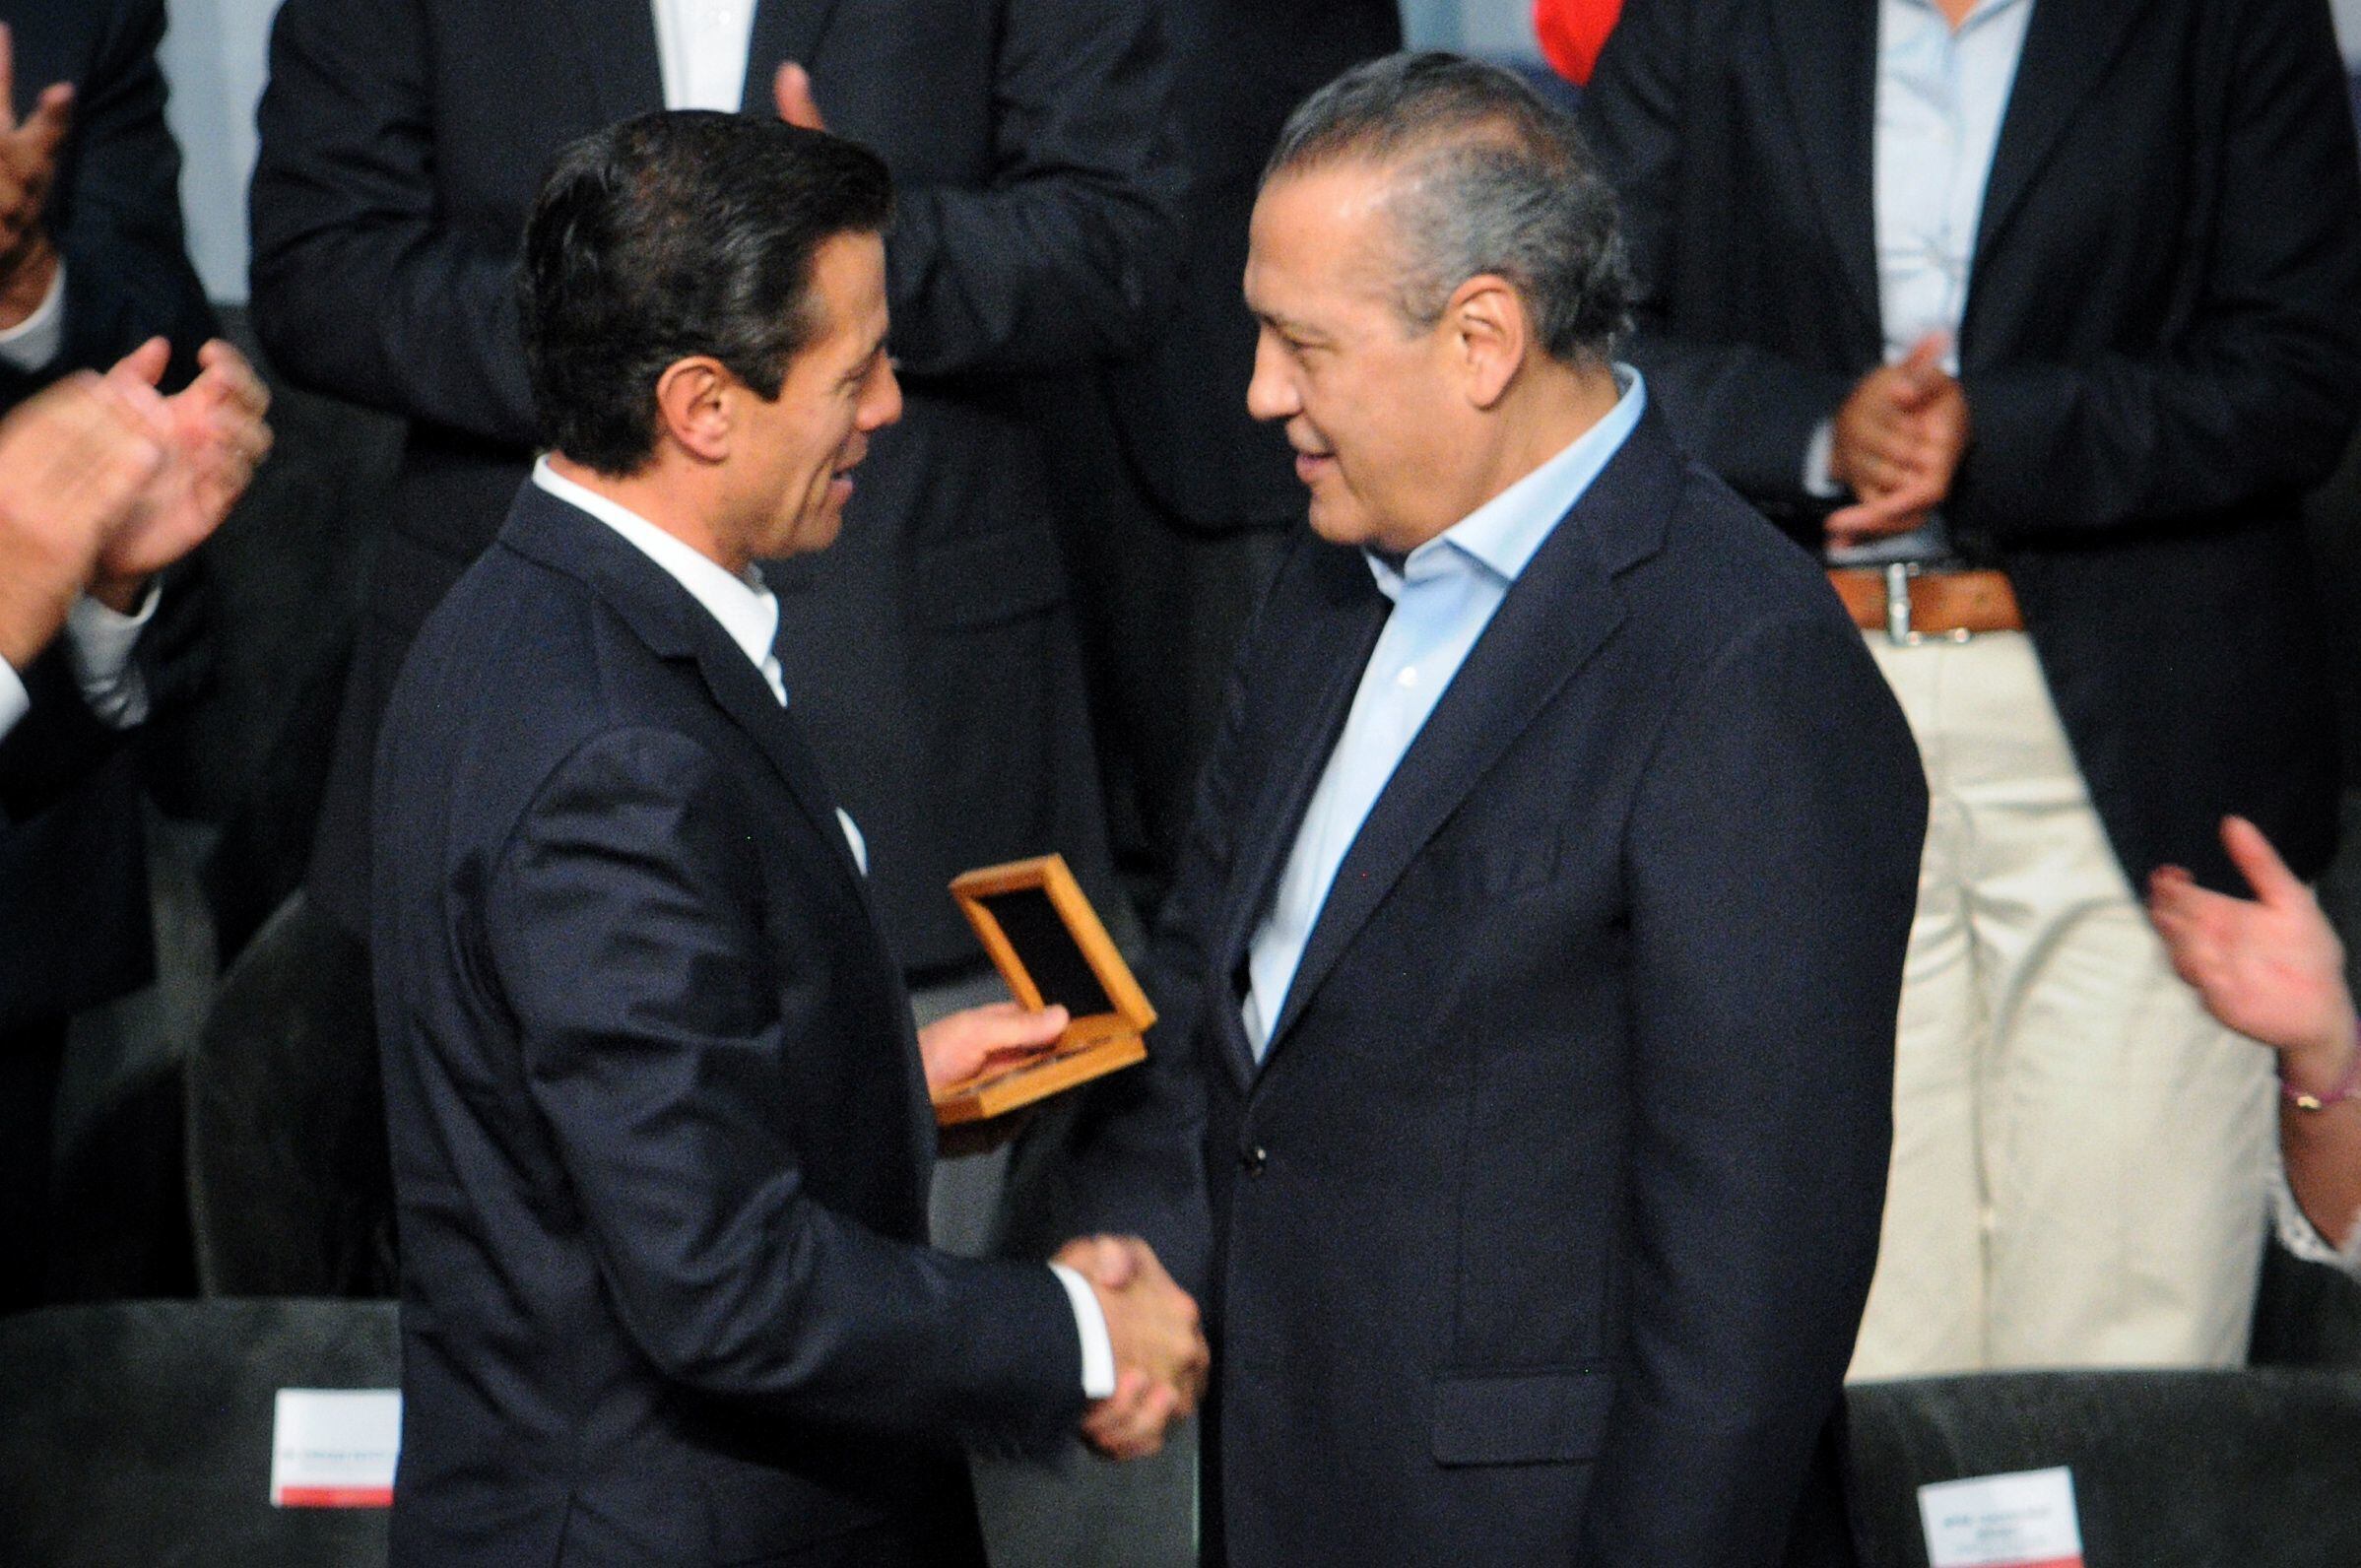 El entonces presidente Enrique Peña Nieto y Manlio Fabio Beltrones, durante un acto por el aniversario del PRI en Ciudad de México en marzo de 2017.